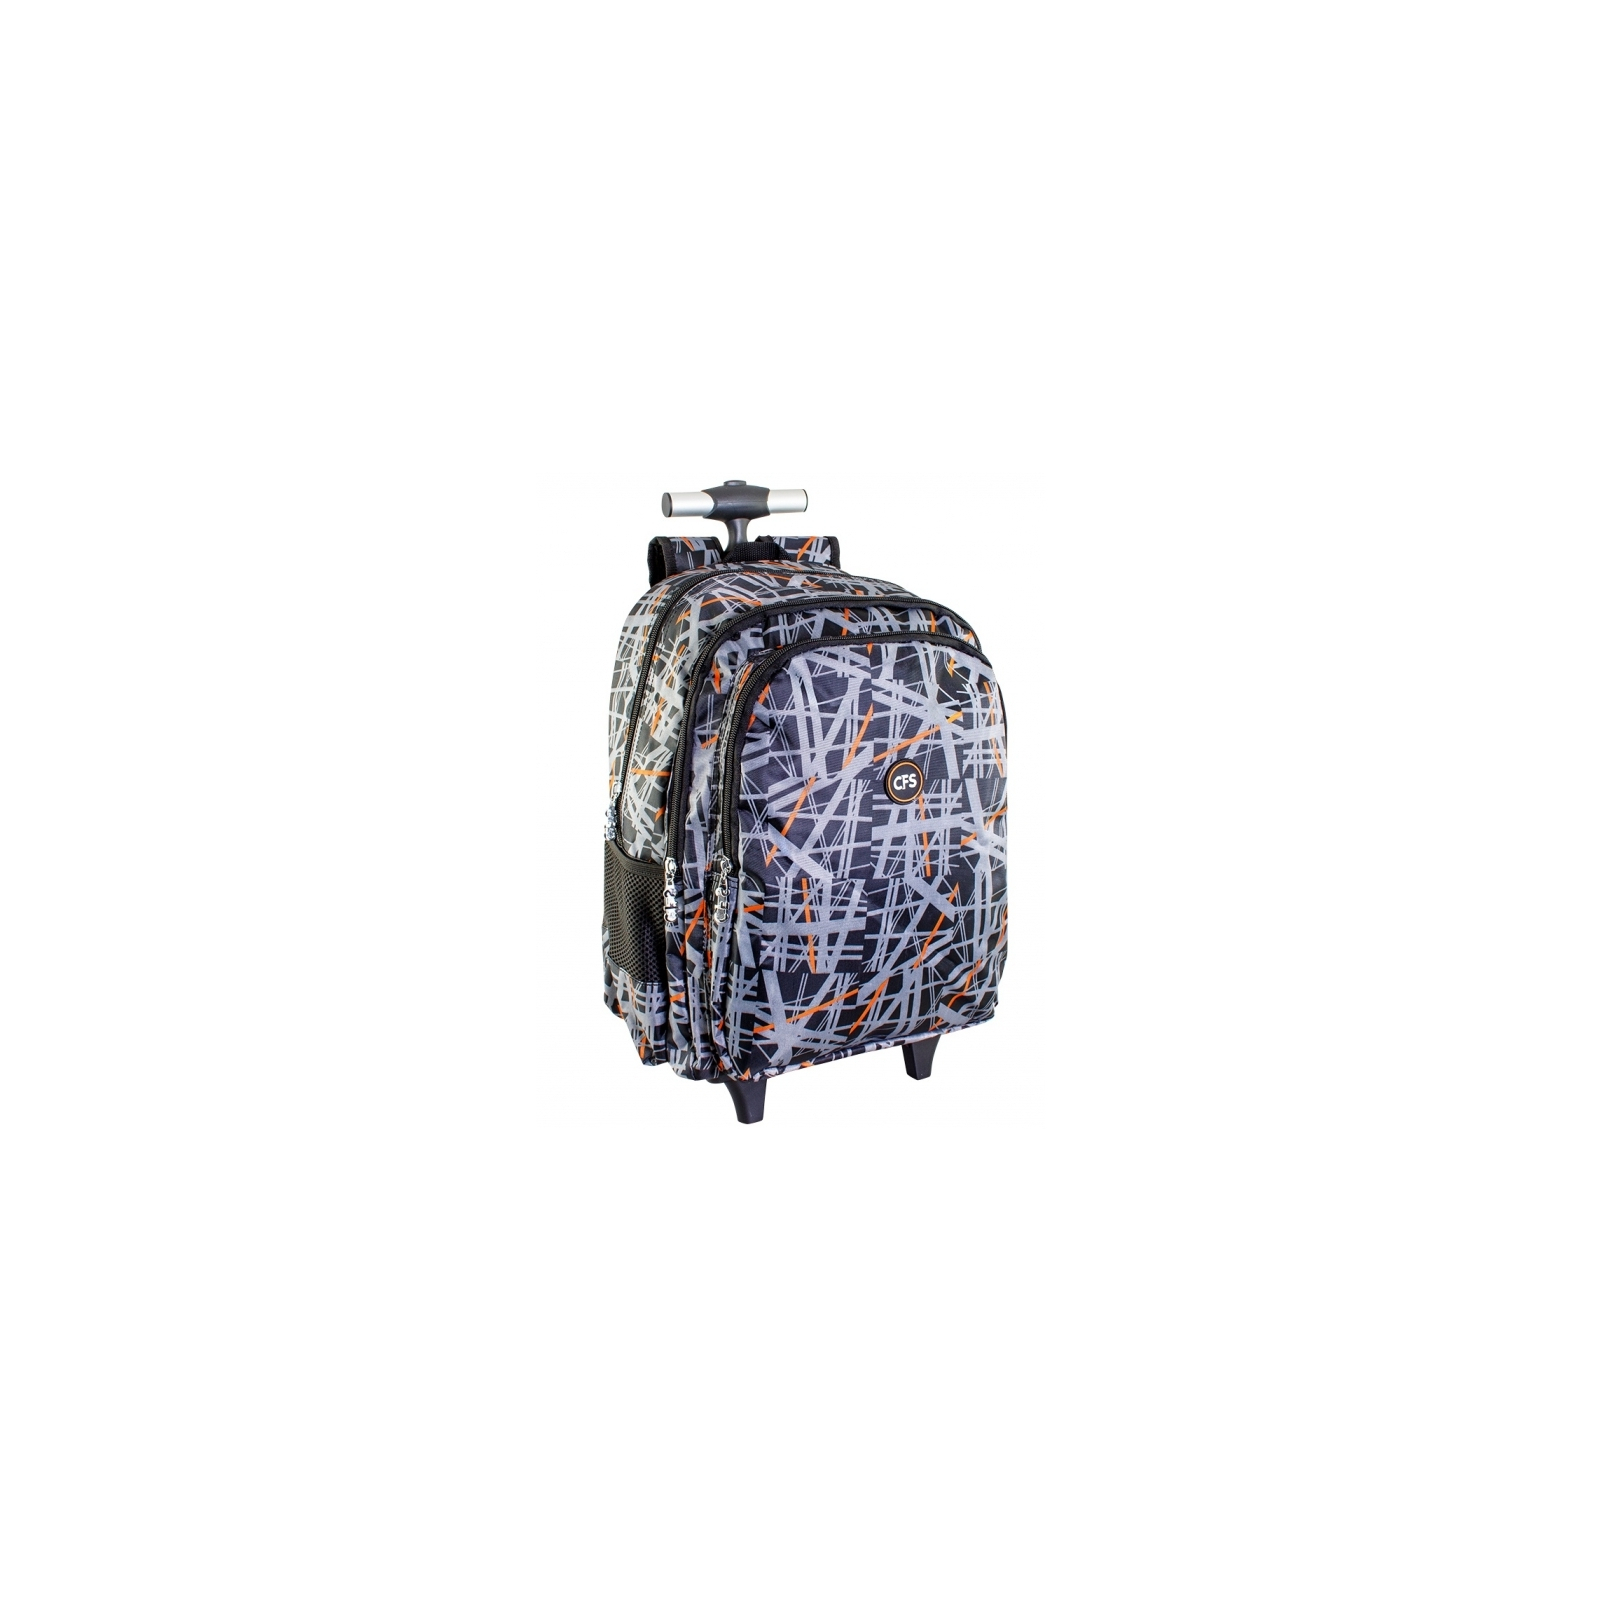 Рюкзак шкільний Cool For School Trolley 40x30x25 см 30 л (CF86521)